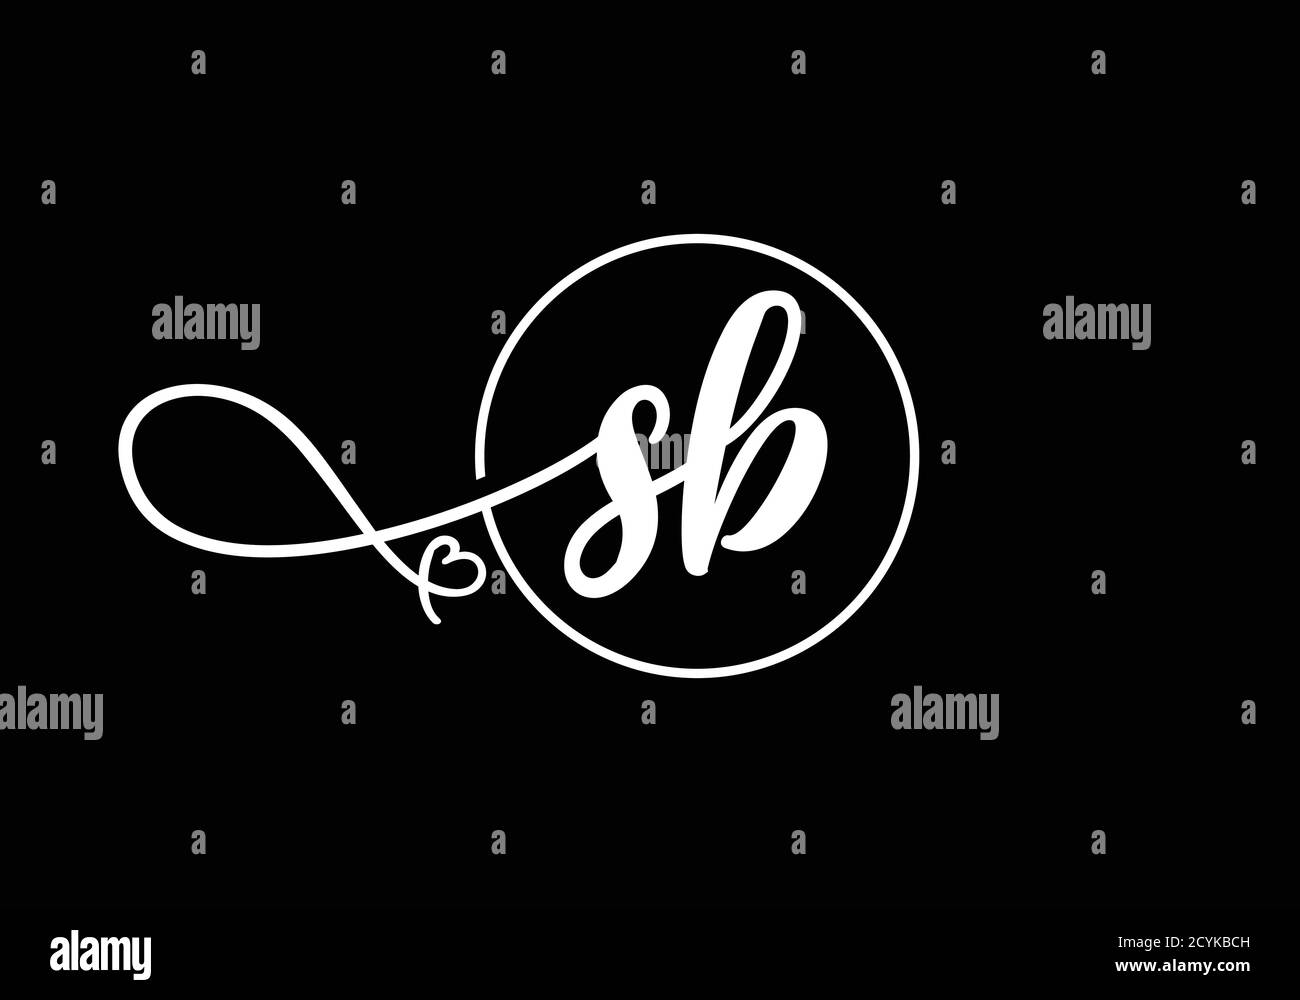 S B Initial Letter Logo Design Vector Template. S B monogram Logo. Stock Vector